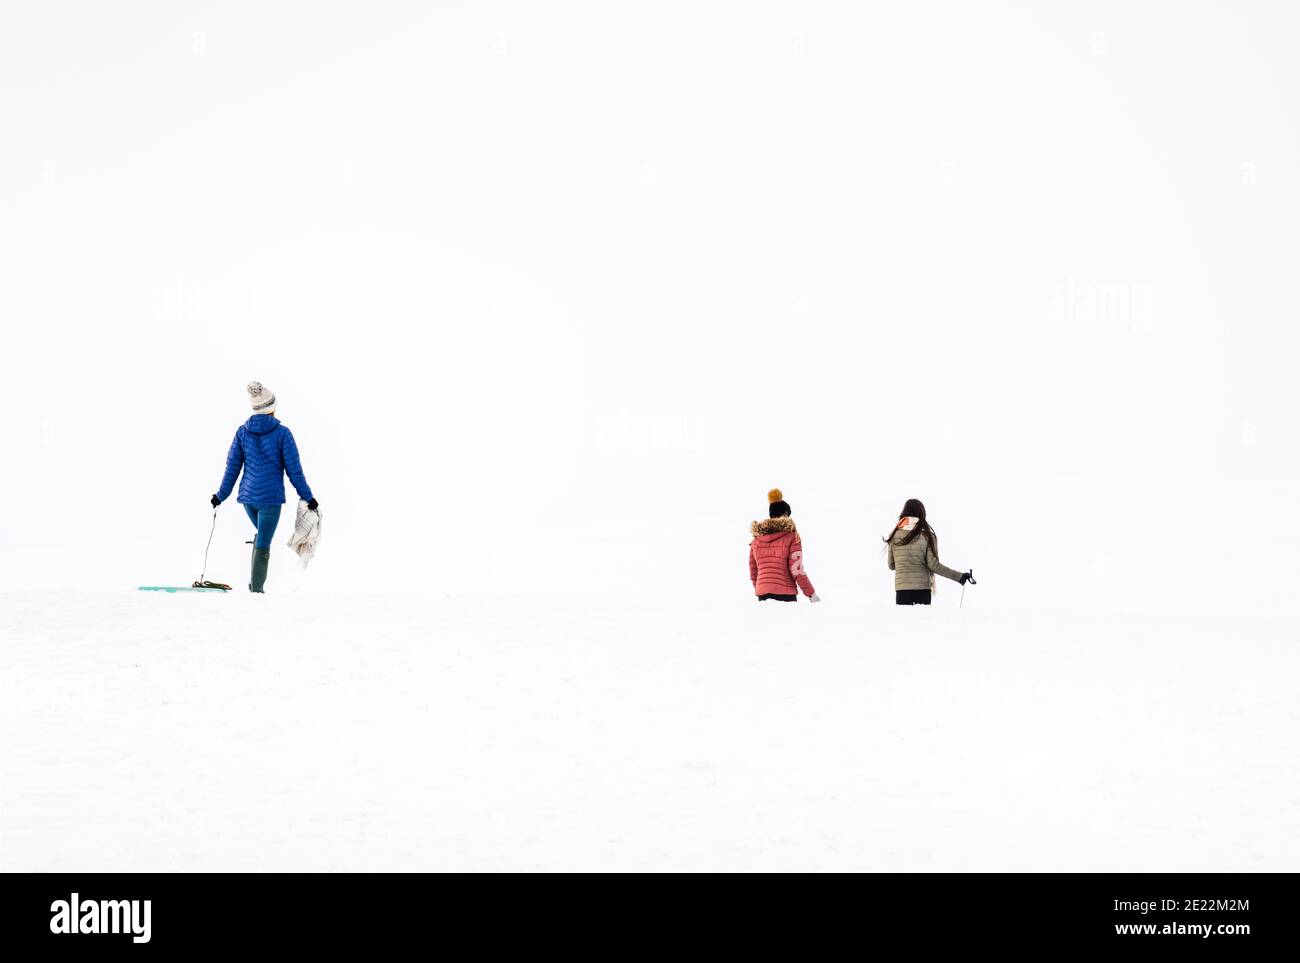 En hiver, activités et exercices en plein air. Les familles avec des enfants traîneaux dans la neige profonde. Banque D'Images